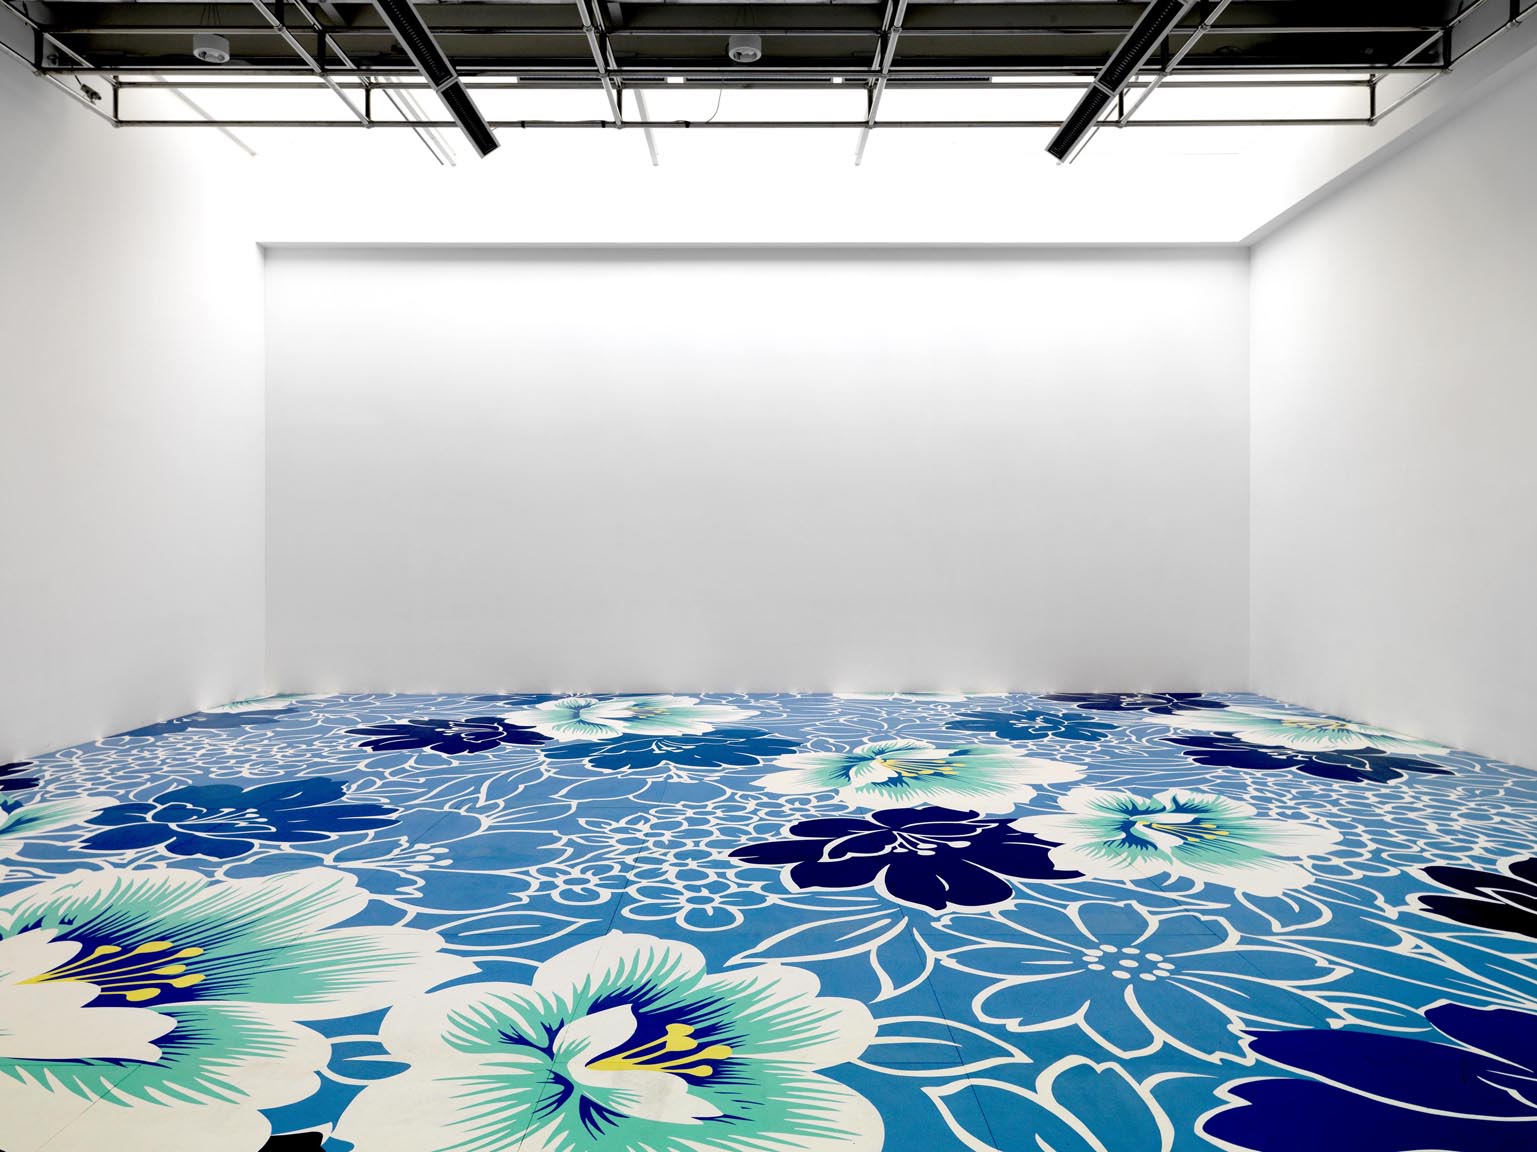 Michael Lin, "Floorpainting", 2010, Tempere e vernice su pavimento di legno, 1100 x 1100 cm